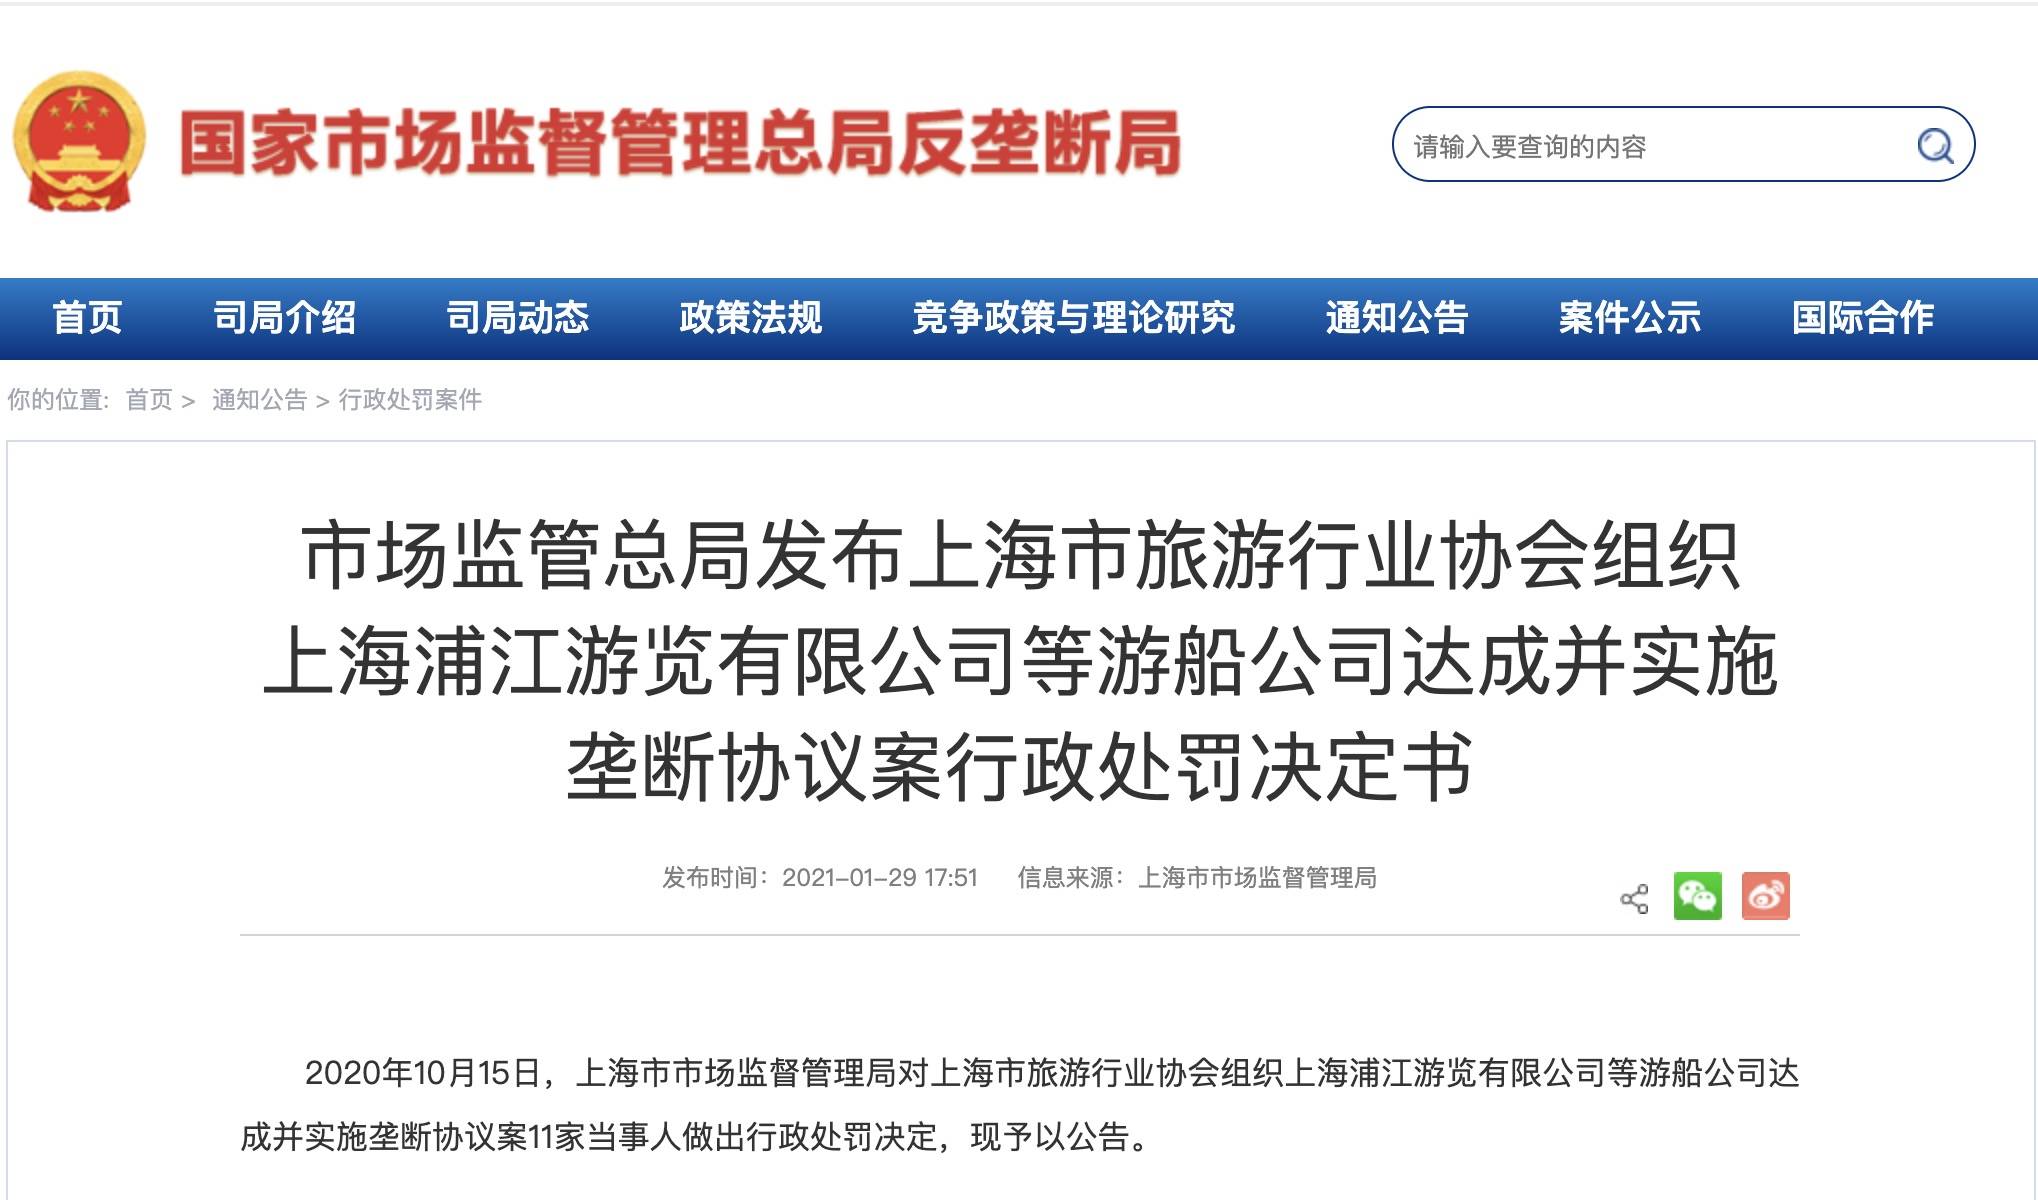 统一黄浦江游船价格还涨价 上海游船垄断协议案罚款181万